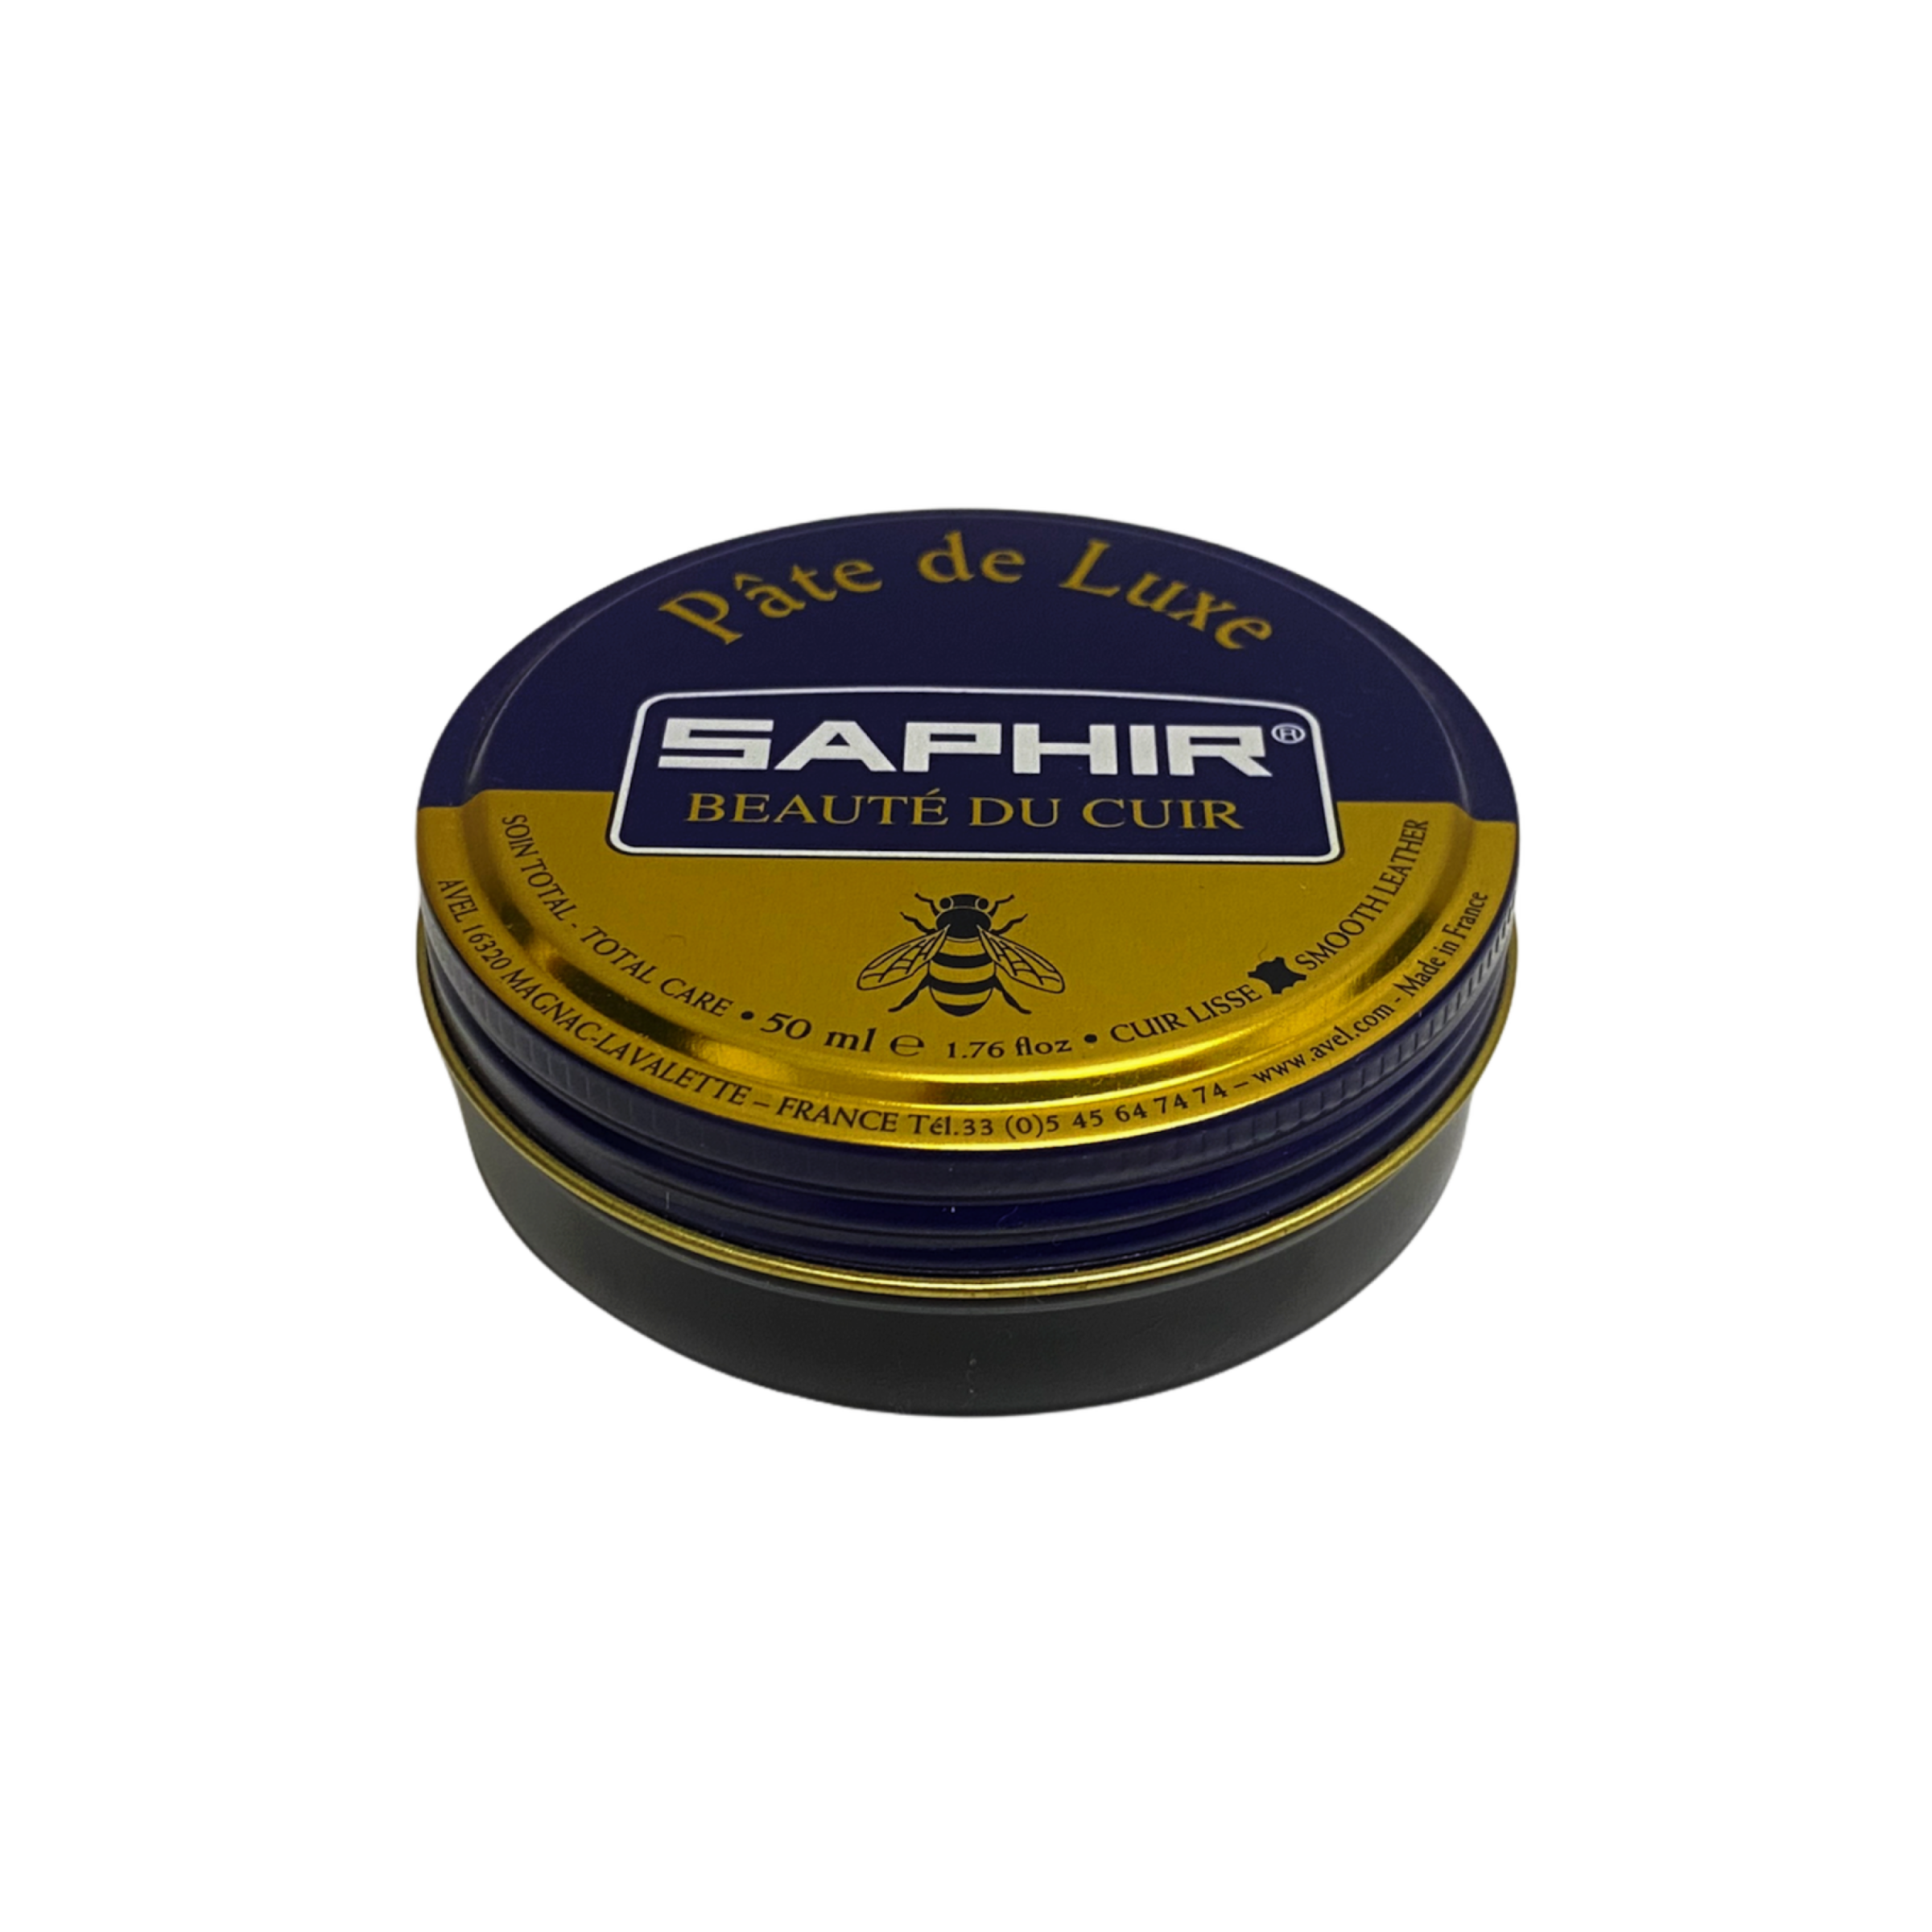 Saphir Beaute DU Cuir Creme Surfine Shoe Polish 50ml (74 Different